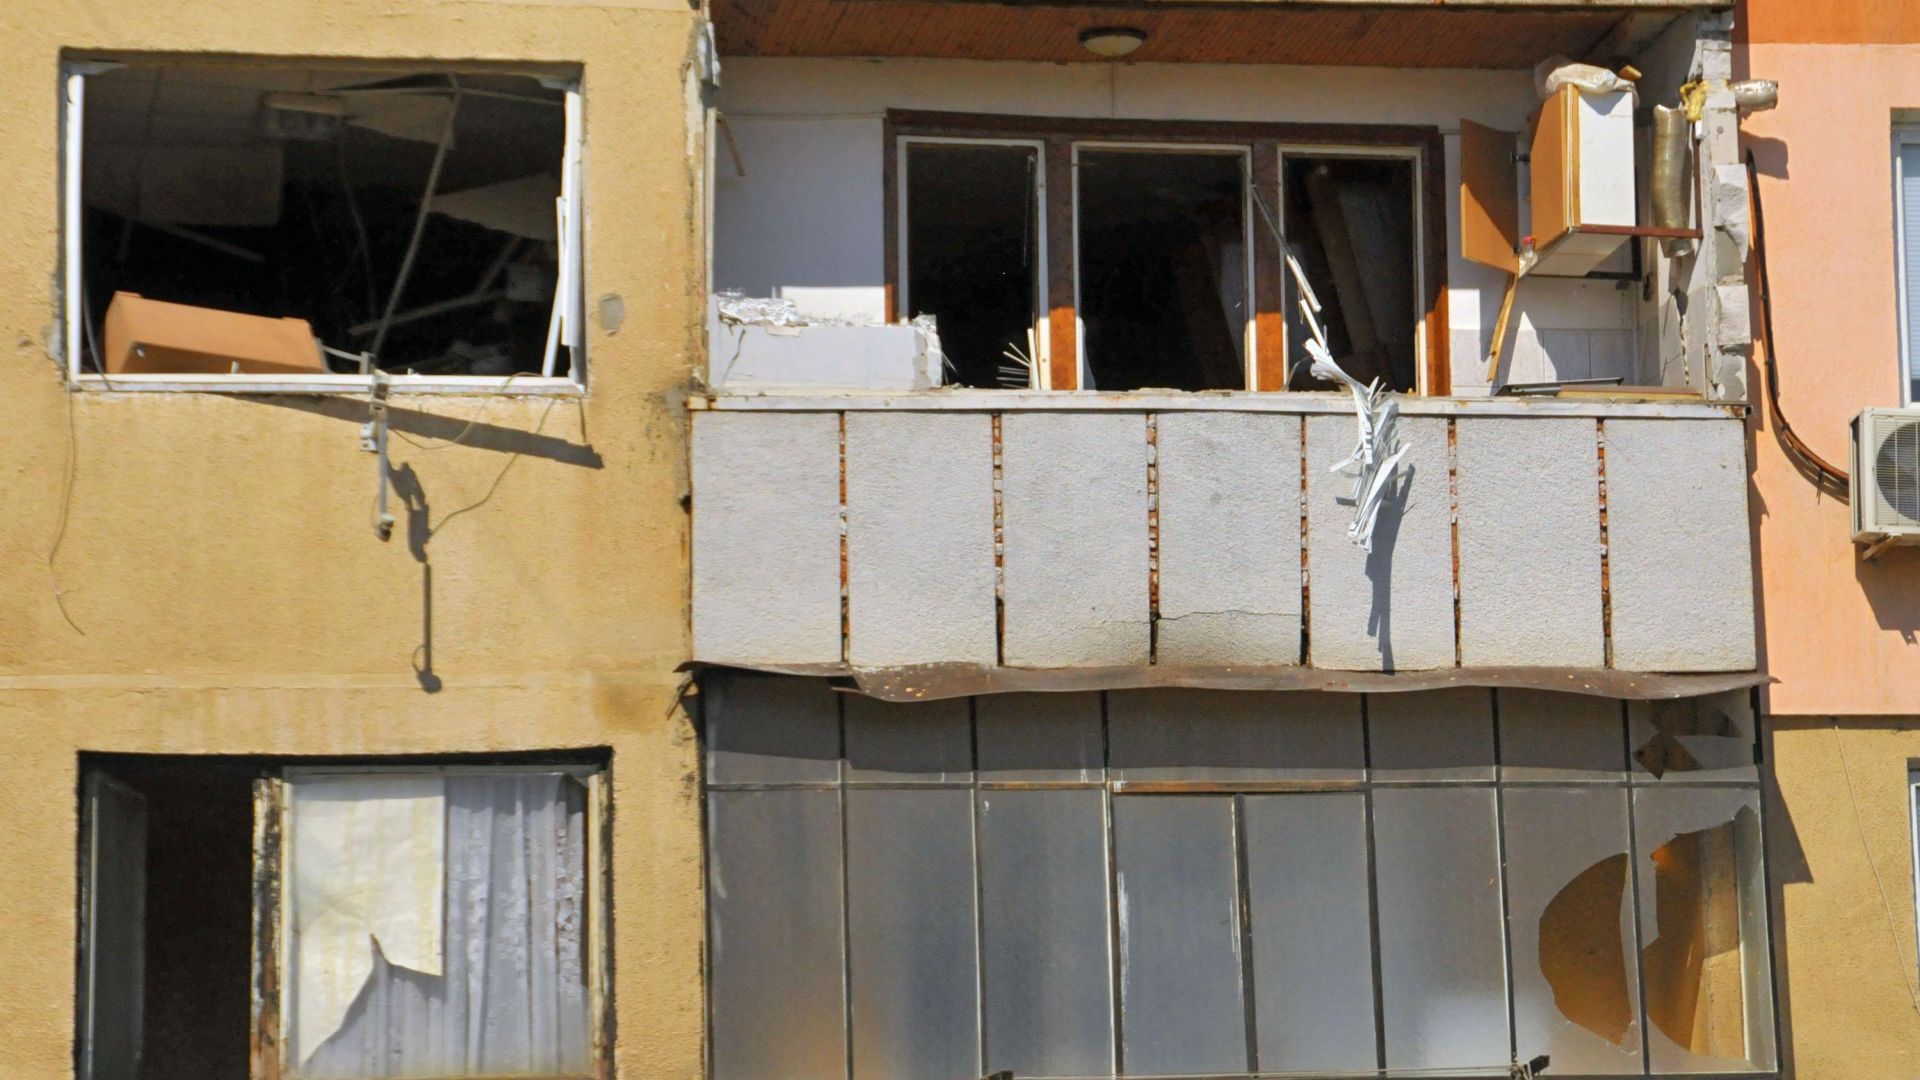 16 семейства от блок в Стара Загора трябва да напуснат